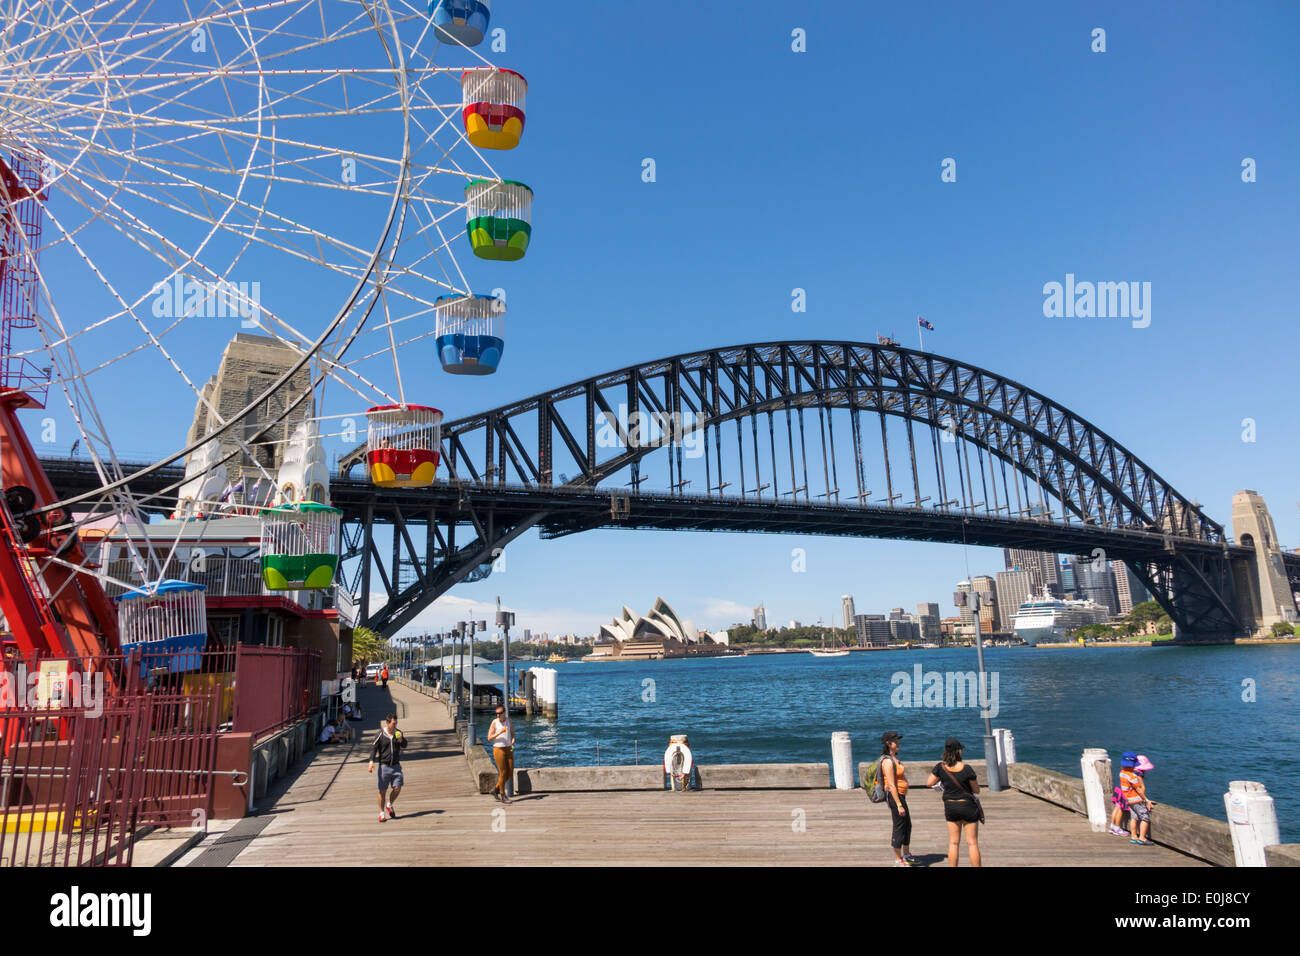 Sydney Australie,Milsons point,Luna Park,divertissement,Ferris Wheel,Harbour Bridge,port,Opera House,AU140310071 Banque D'Images